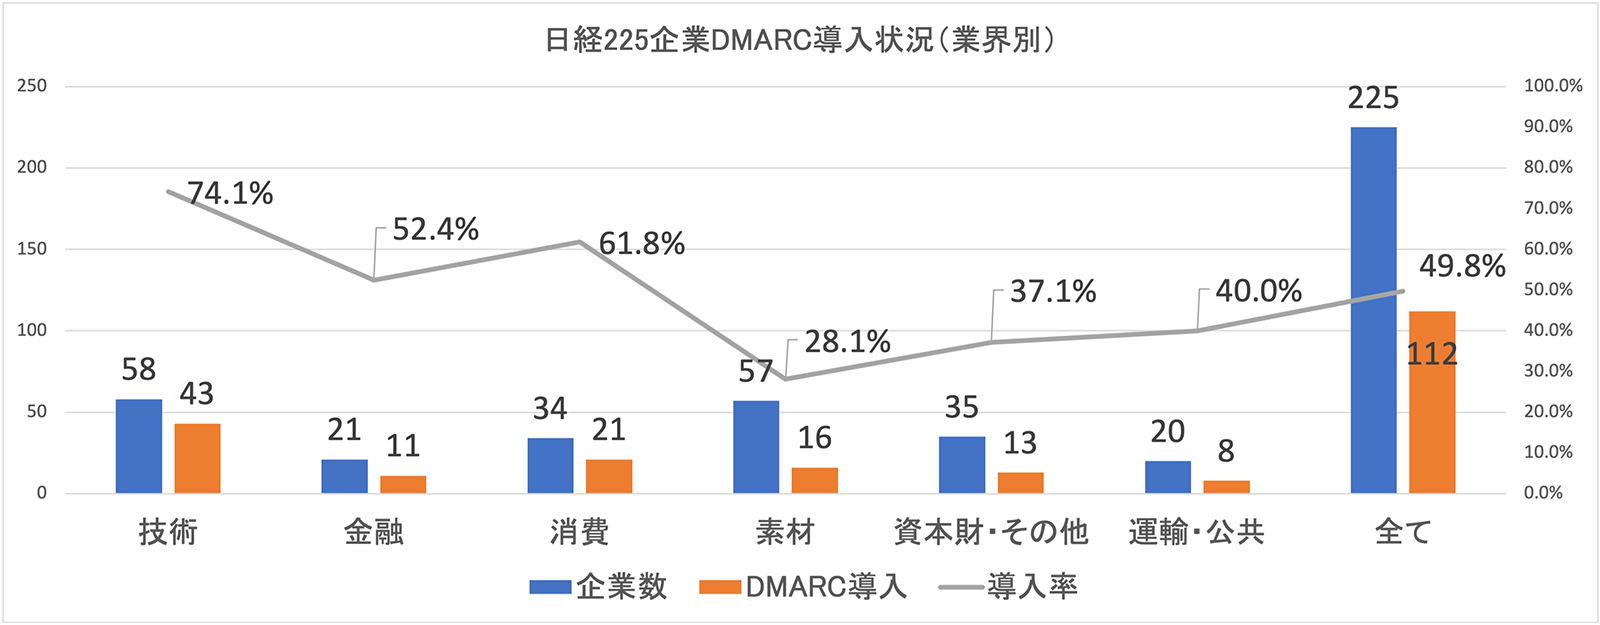 図2. 業界別での日経225企業DMARC導入状況（n=225）